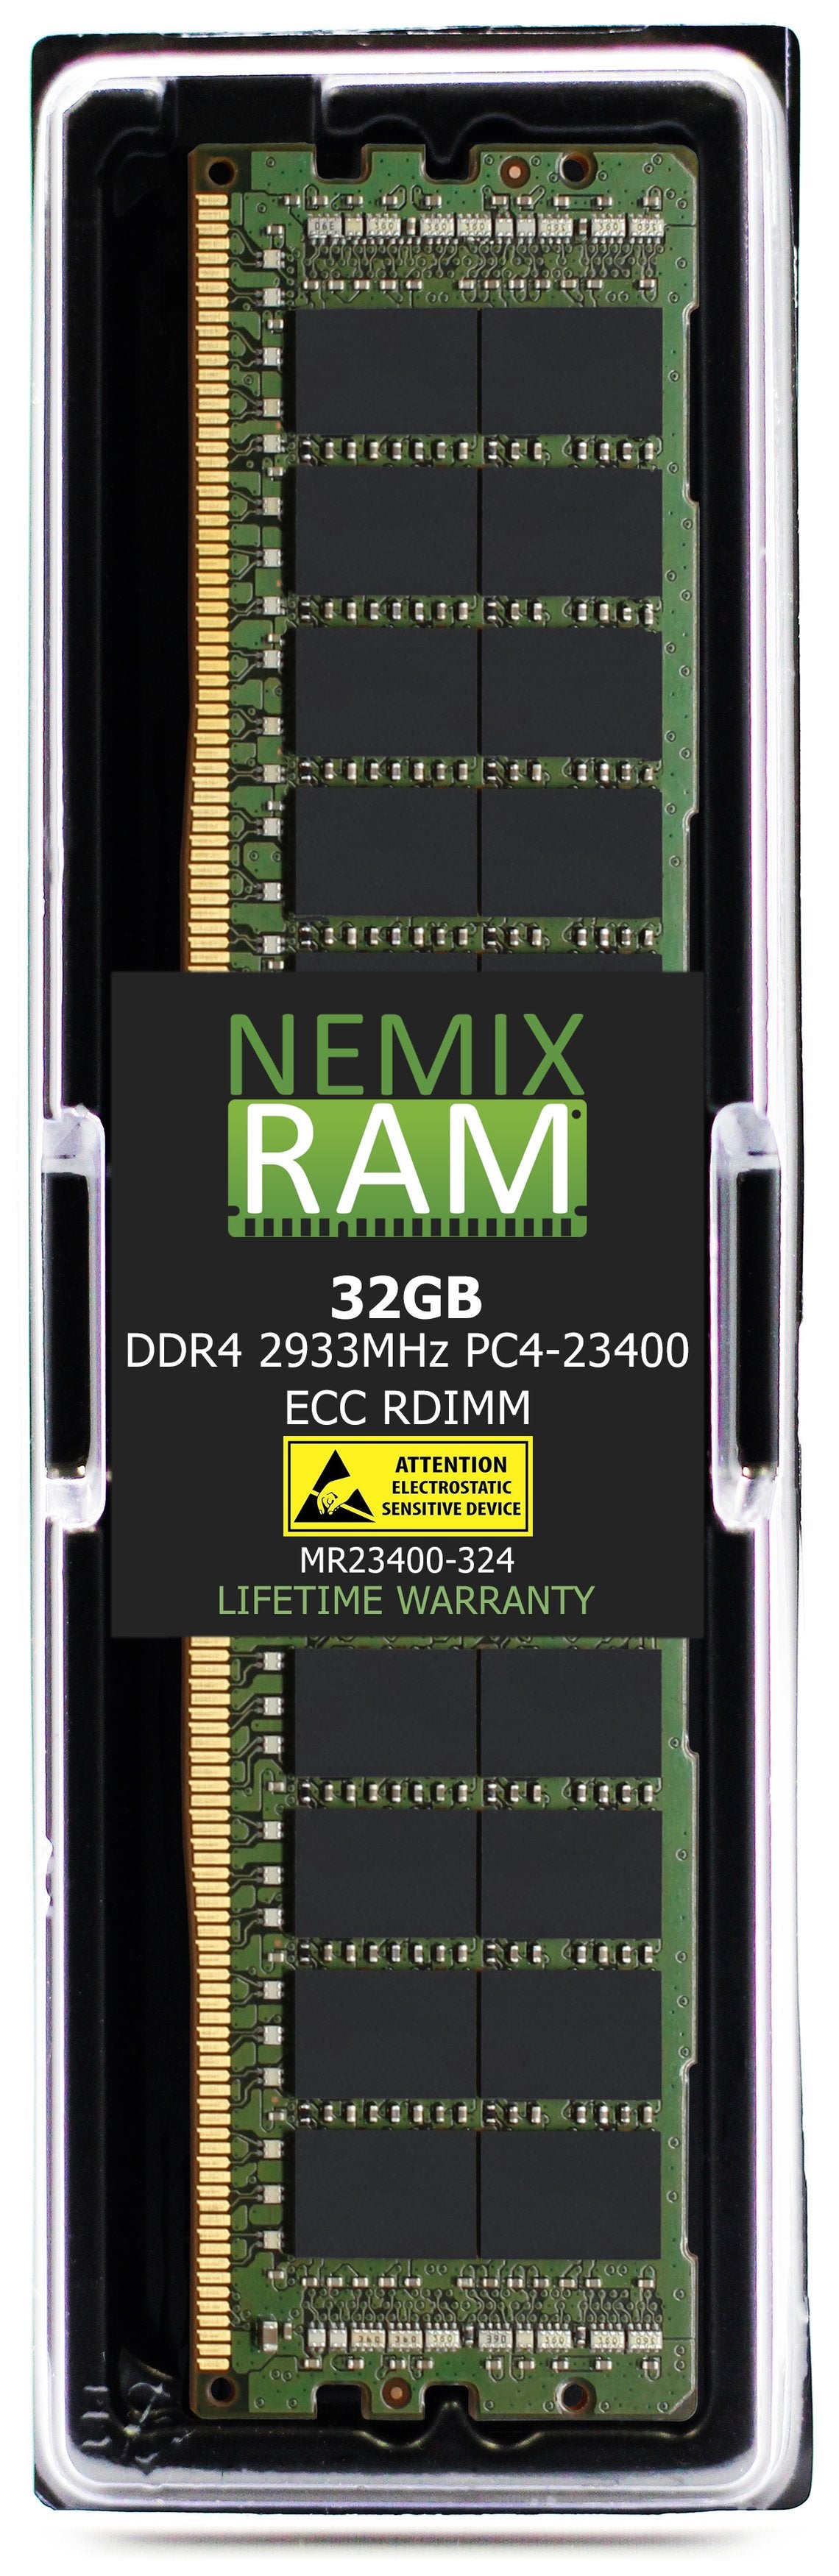 32GB DDR4 2933MHZ PC4-23400 RDIMM Compatible with Supermicro MEM-DR432L-CL02-ER29